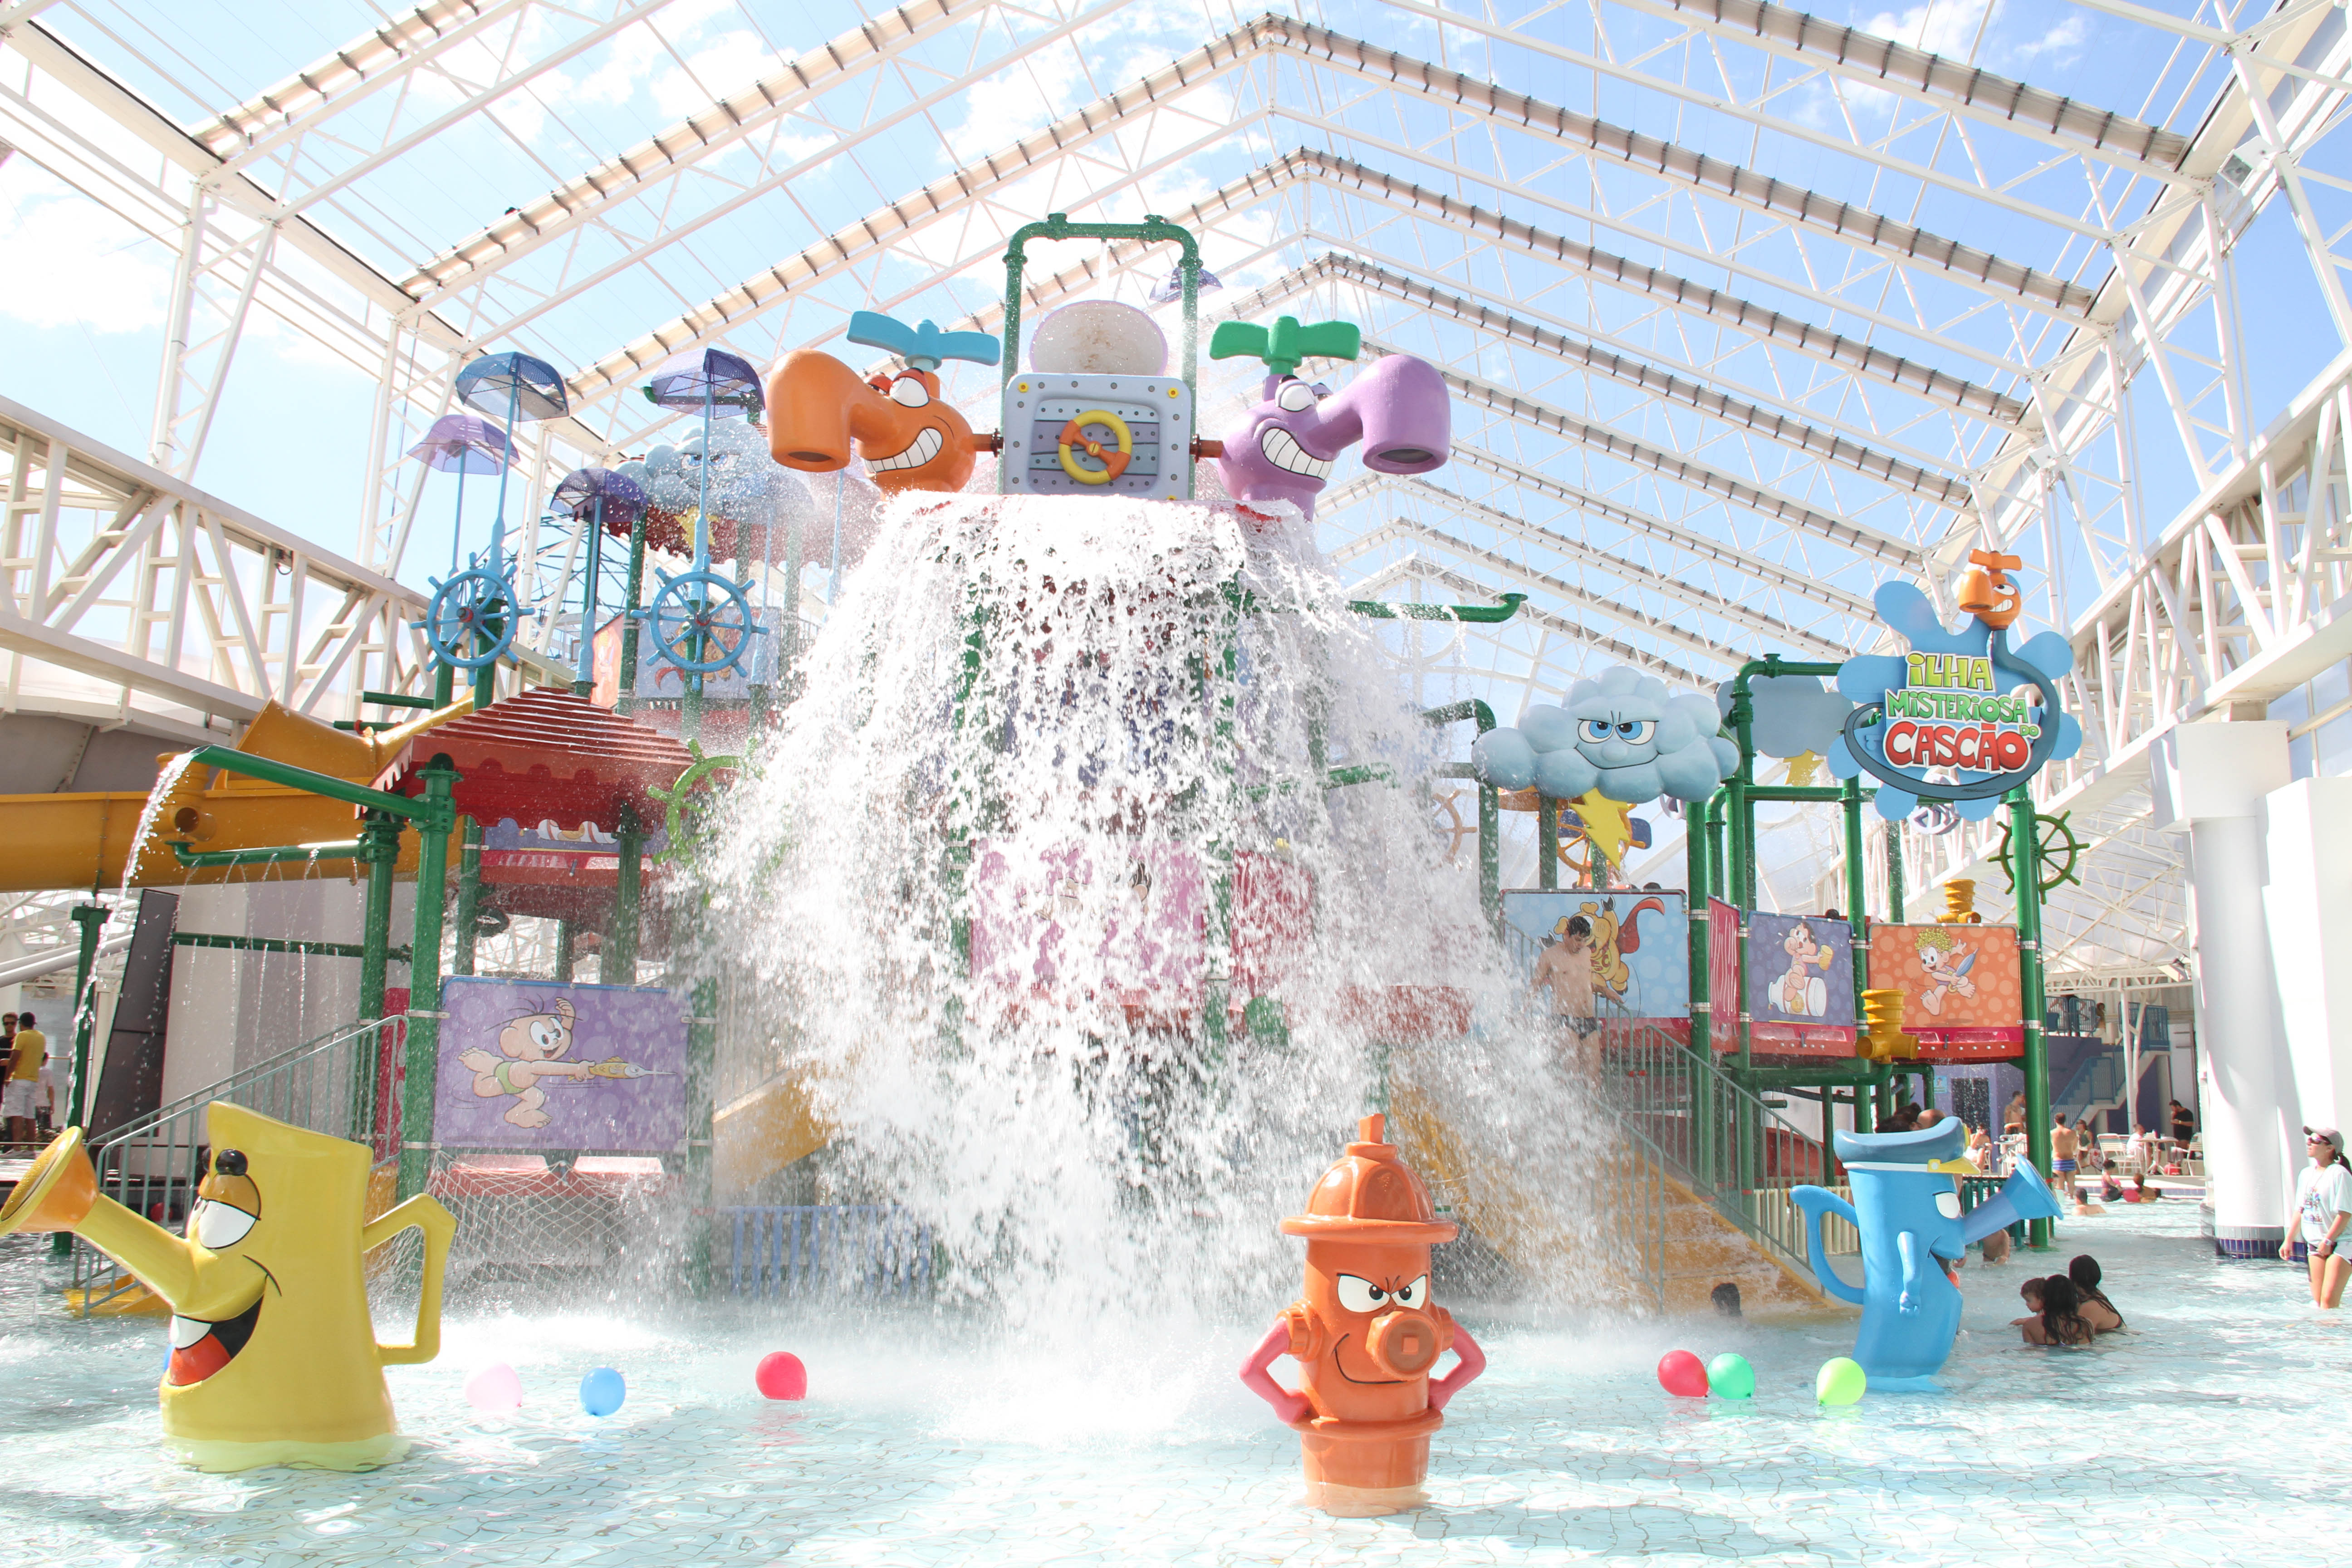 A imagem mostra uma área de piscinas infantis. É possível ver uma grande instalação de brinquedos em formato de torneiras, hidrantes e guarda-chuvas, além de um grande balde que despeja água sobre a rasa piscina.